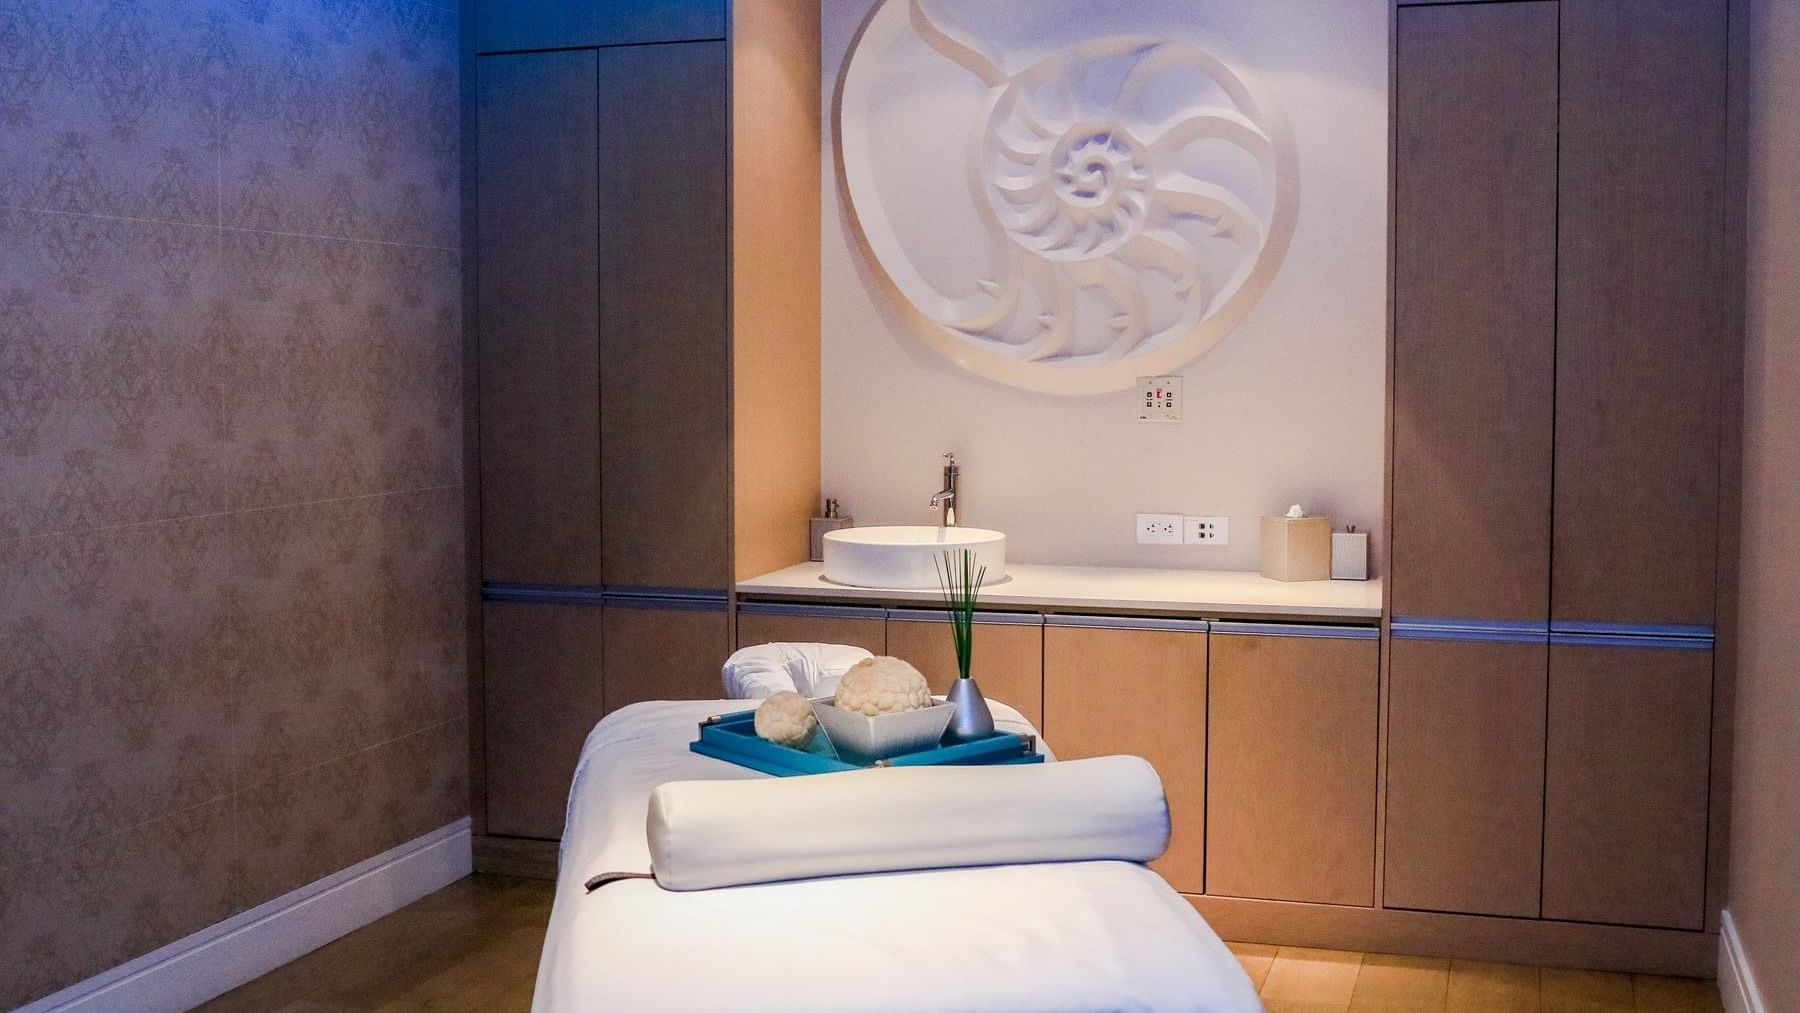 Diplomat Spa - Massage and Facial Room